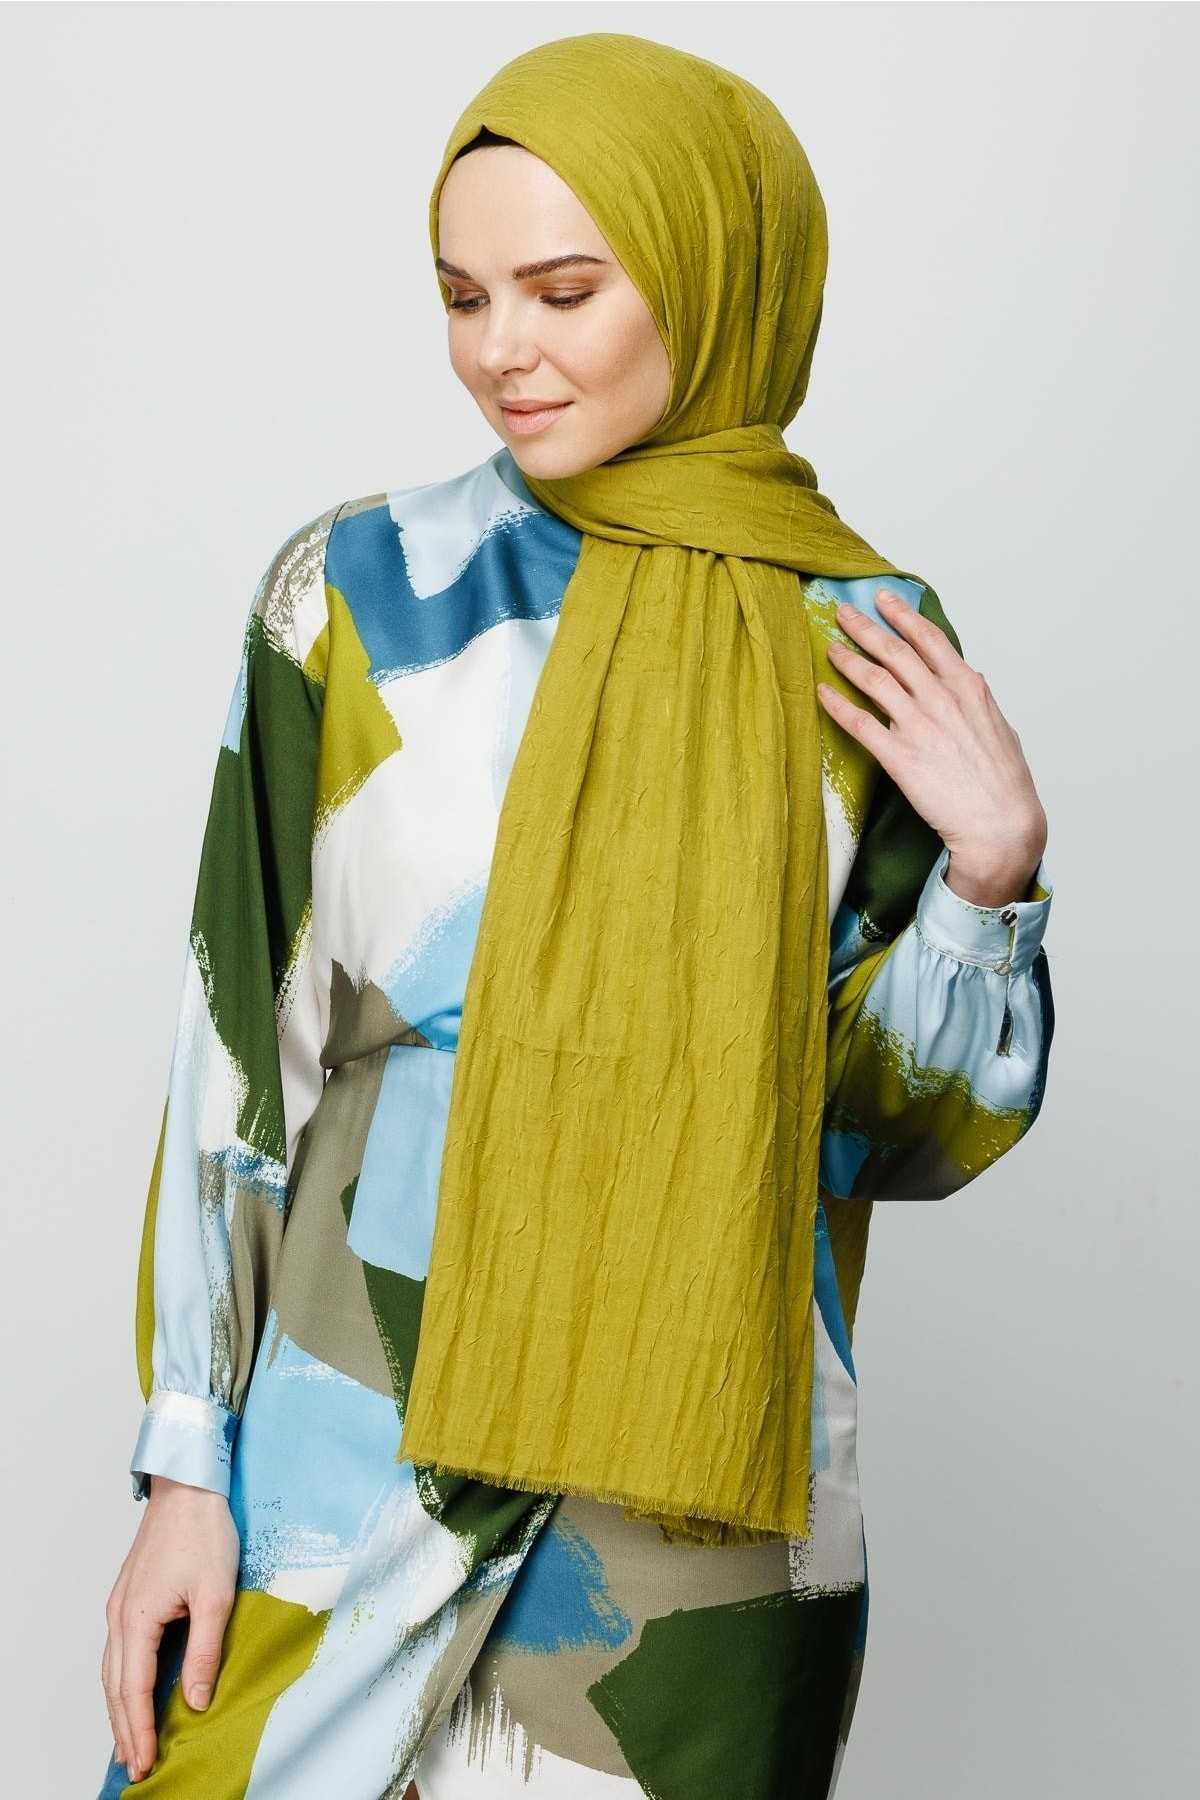 Bamboo Hijab